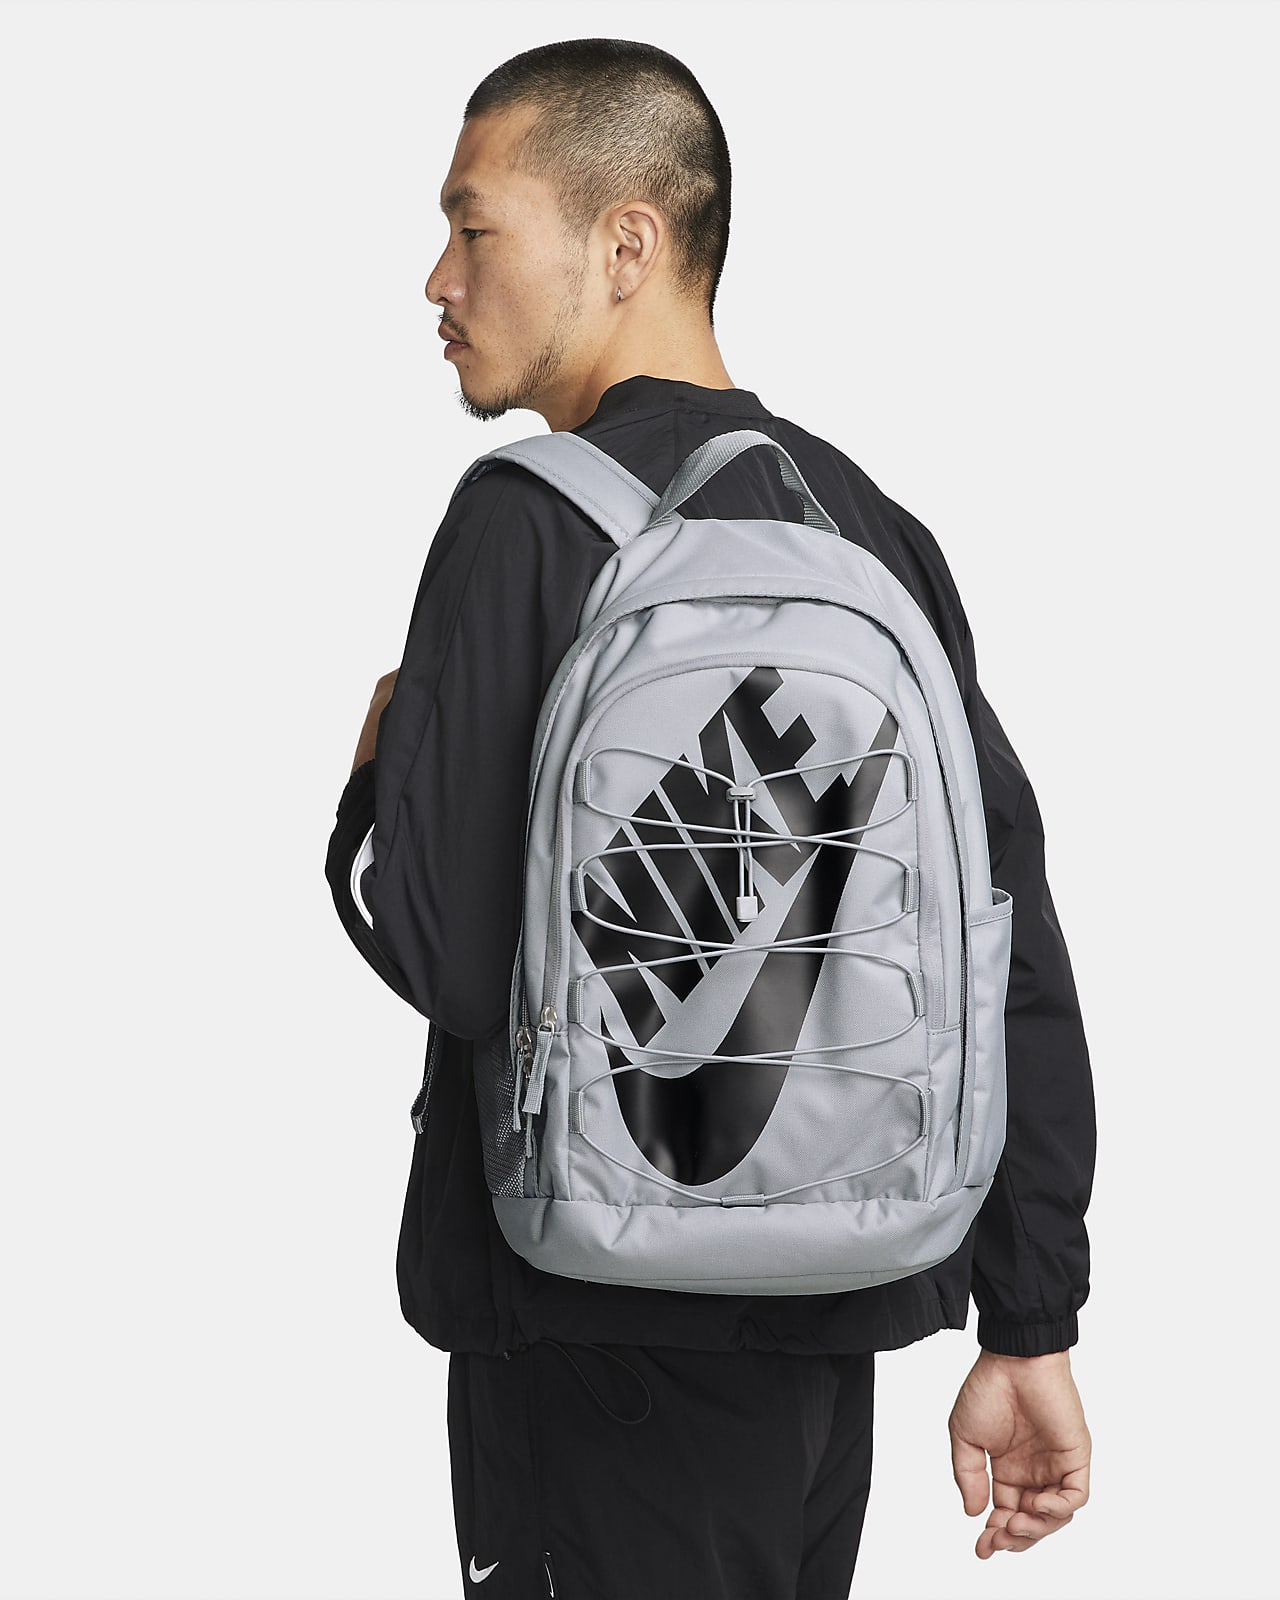 Nike One Backpack Black Women